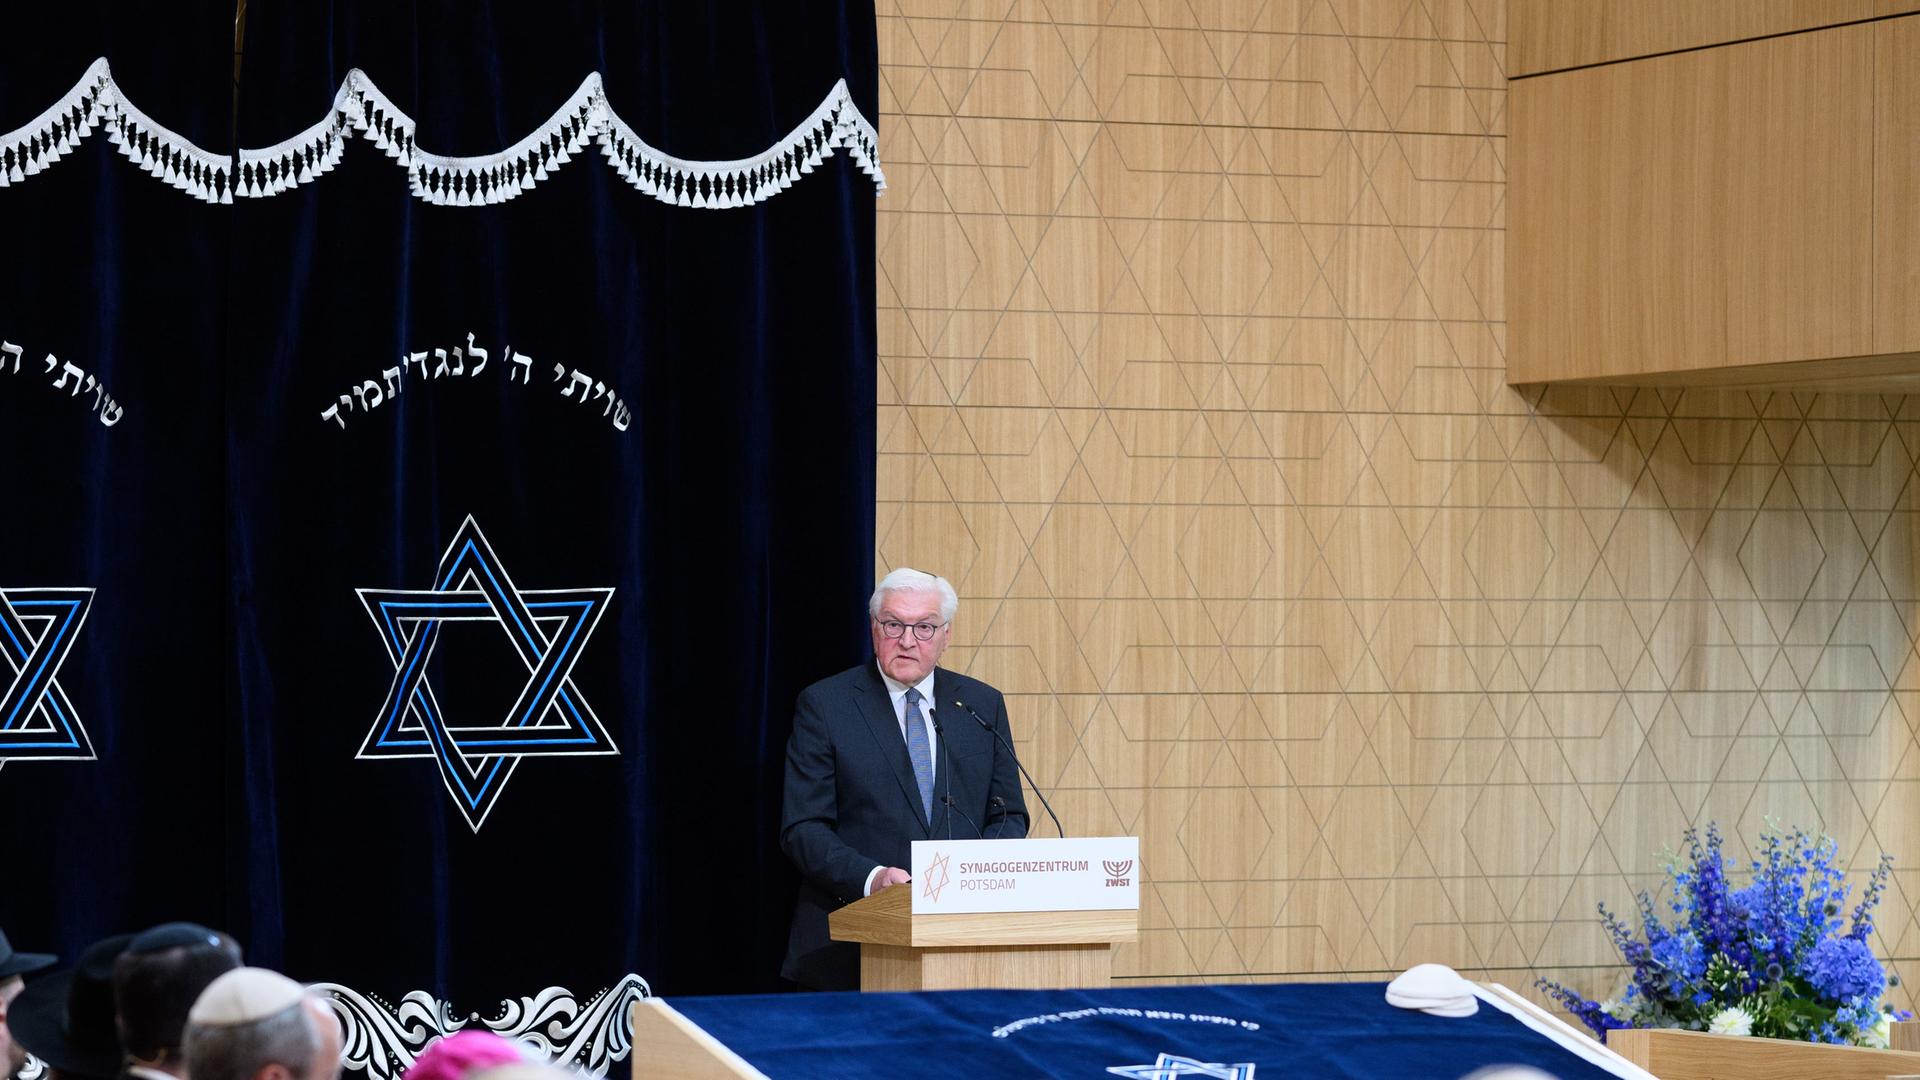 Bundespräsident Frank-Walter steht in der Synagoge am Redner-Pult und spricht.